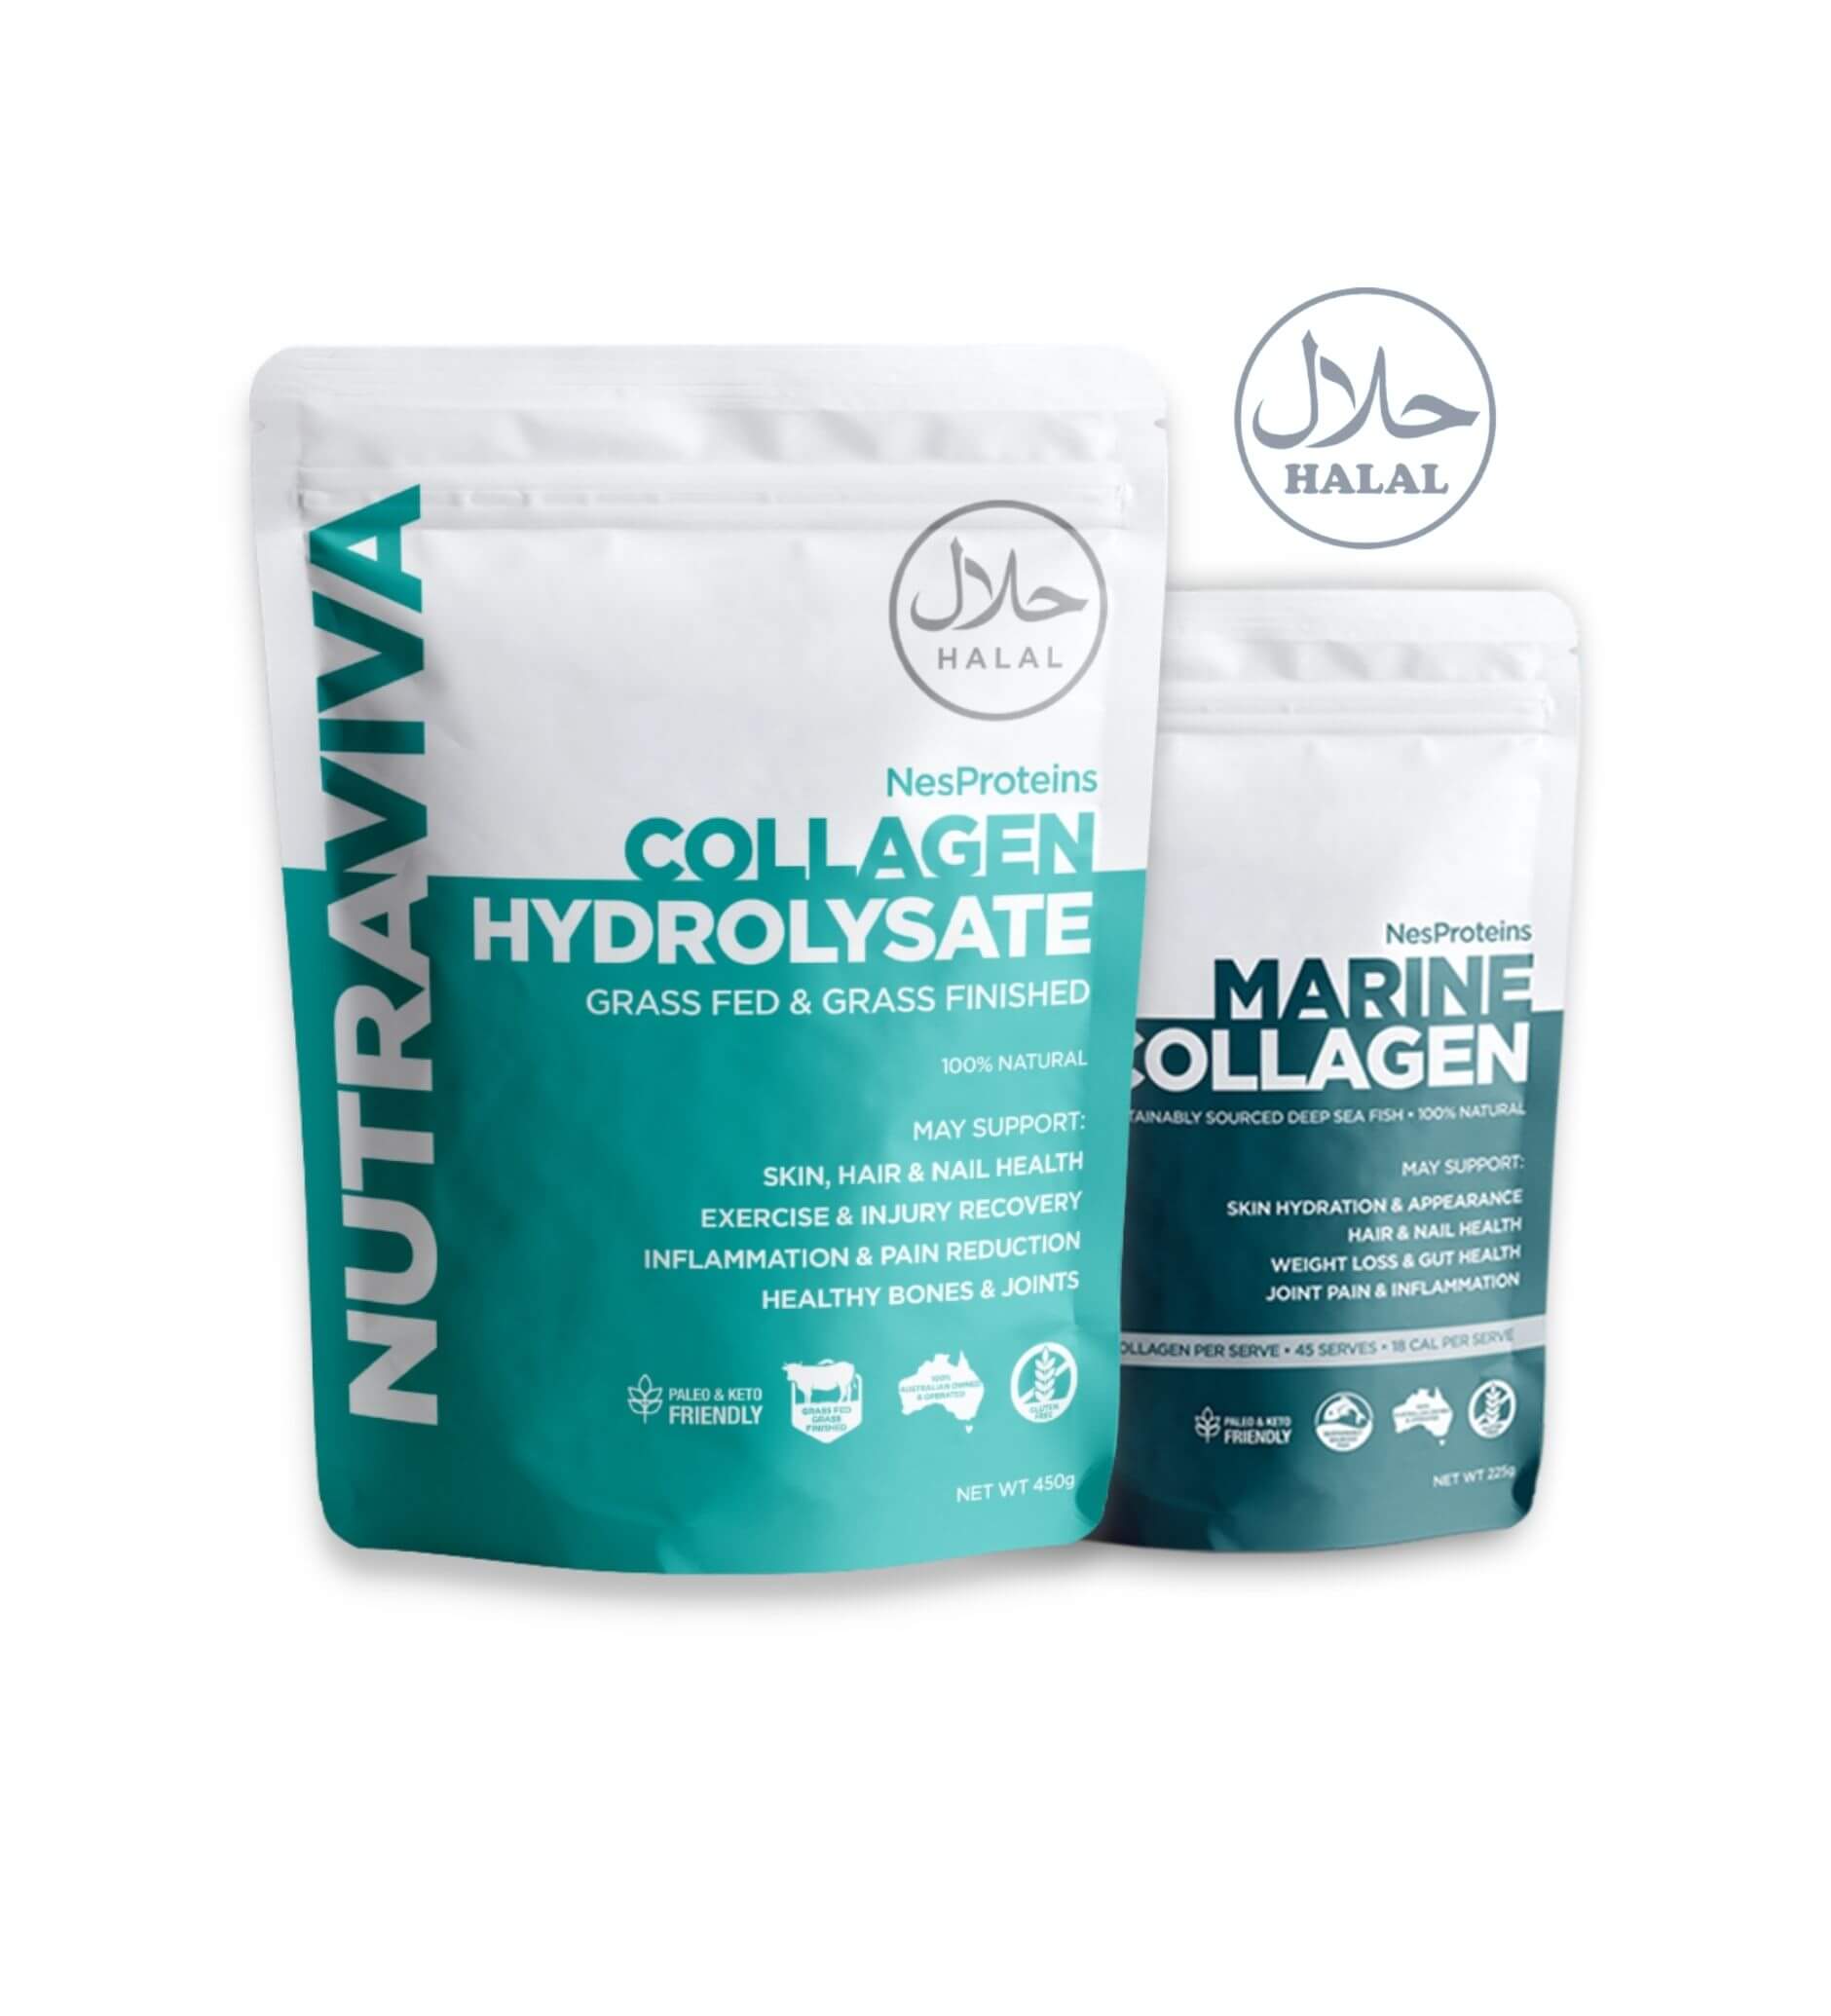 Halal Certified - Collagen Hydrolysate 450g + Marine Collagen 280g